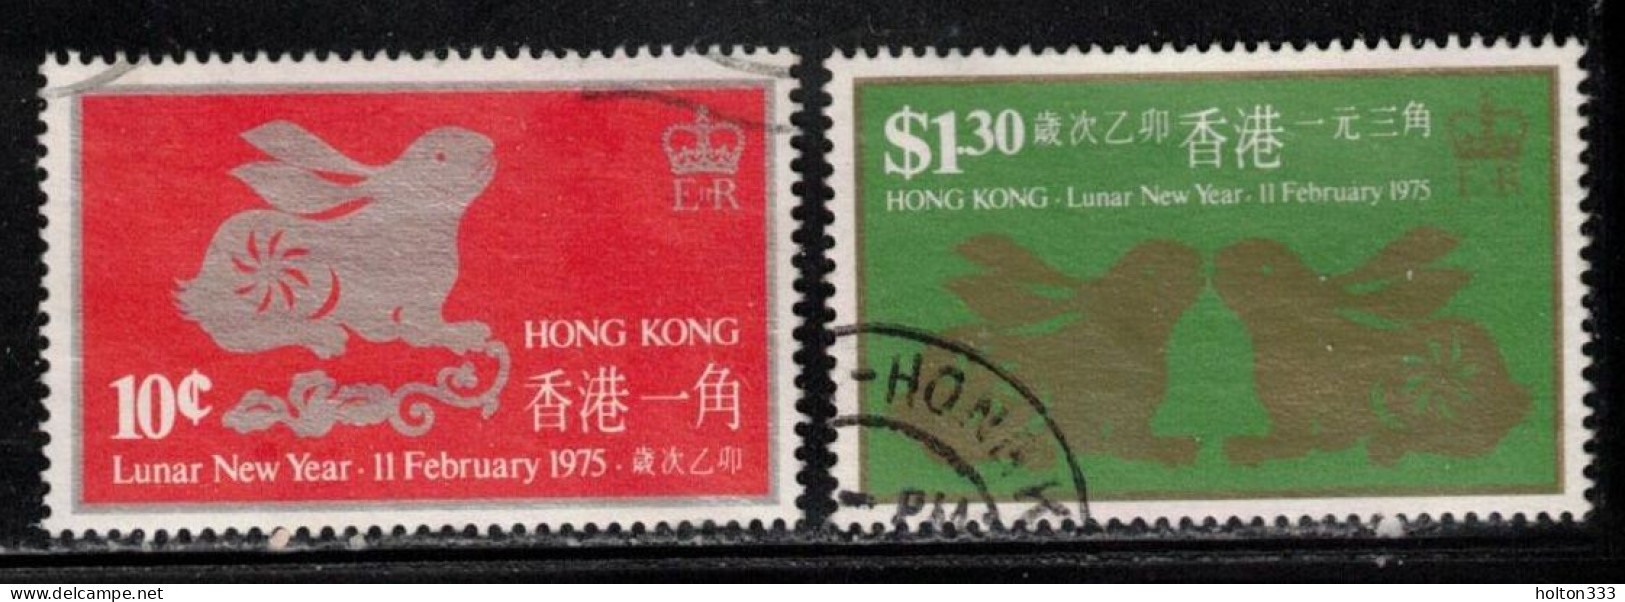 HONG KONG Scott # 302-3 Used - Lunar New Year 1975 - Gebraucht